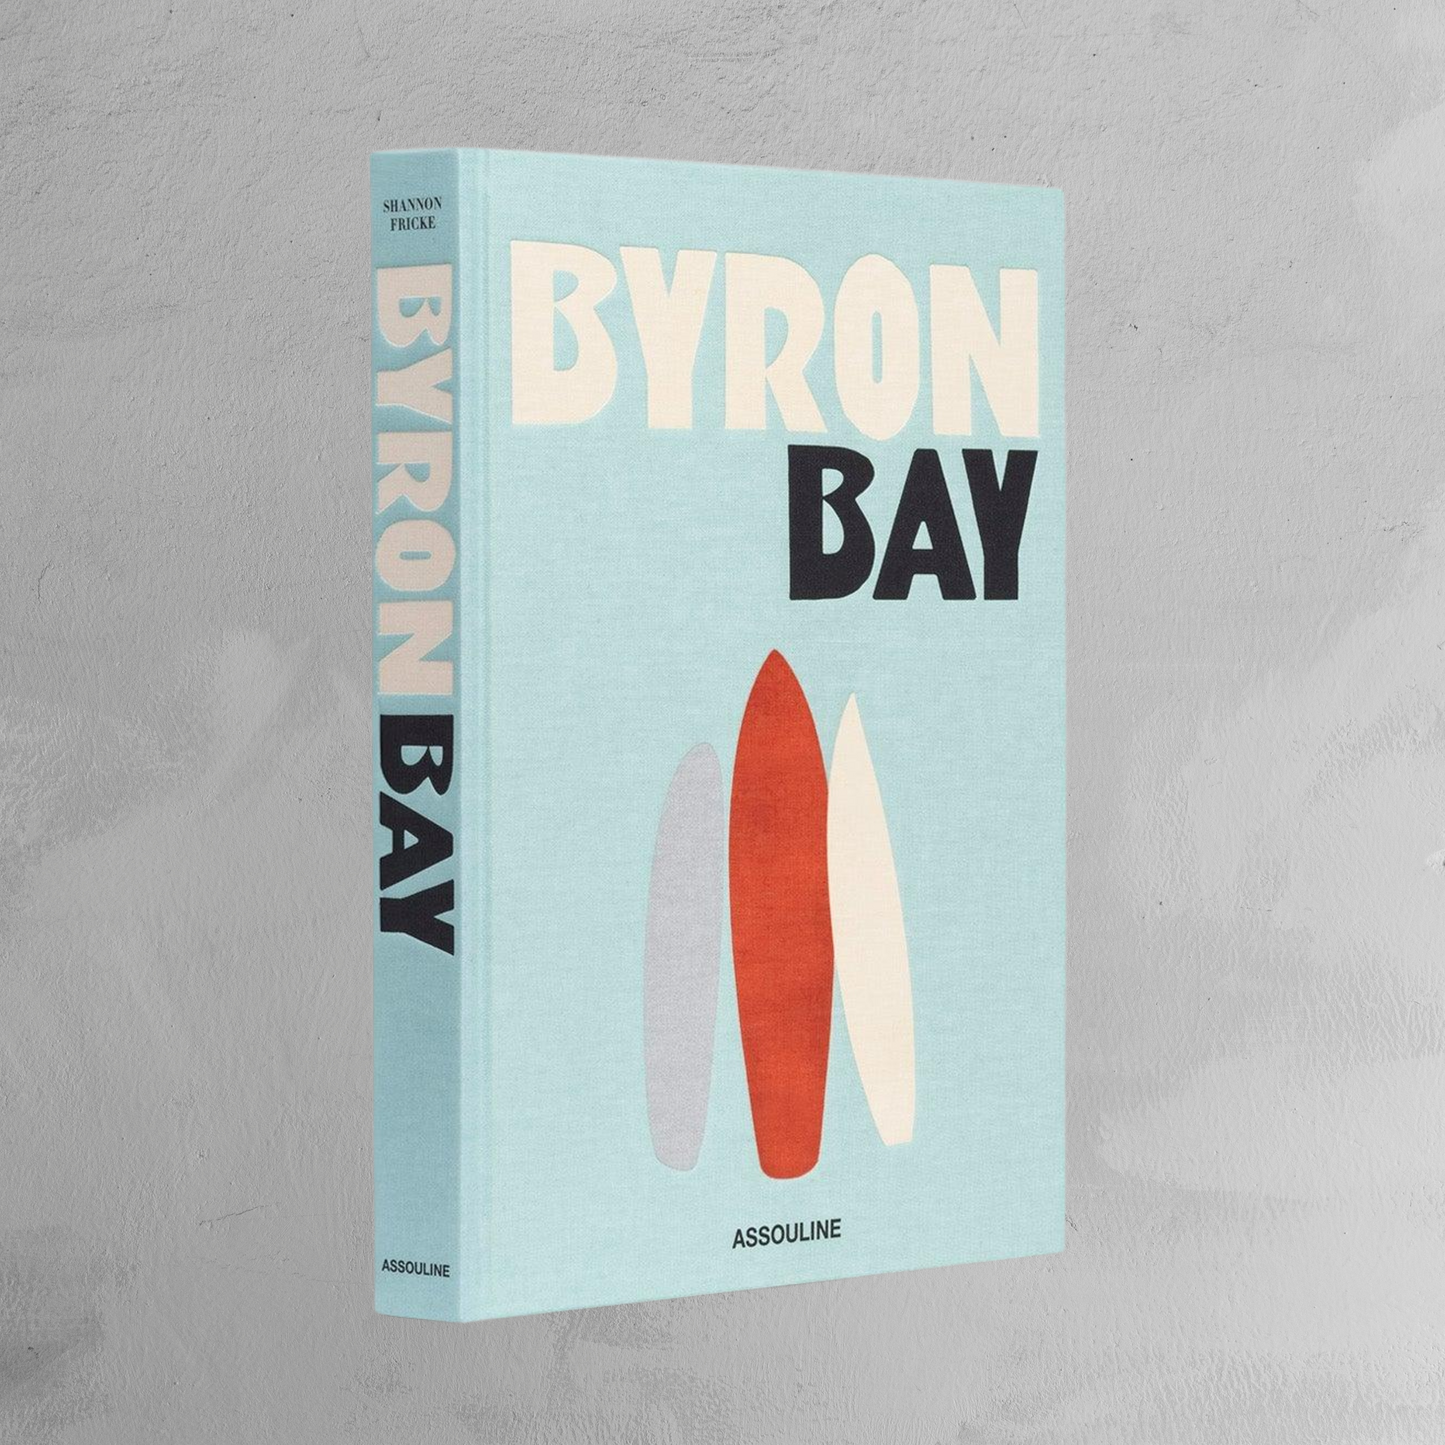 Book - Byron Bay